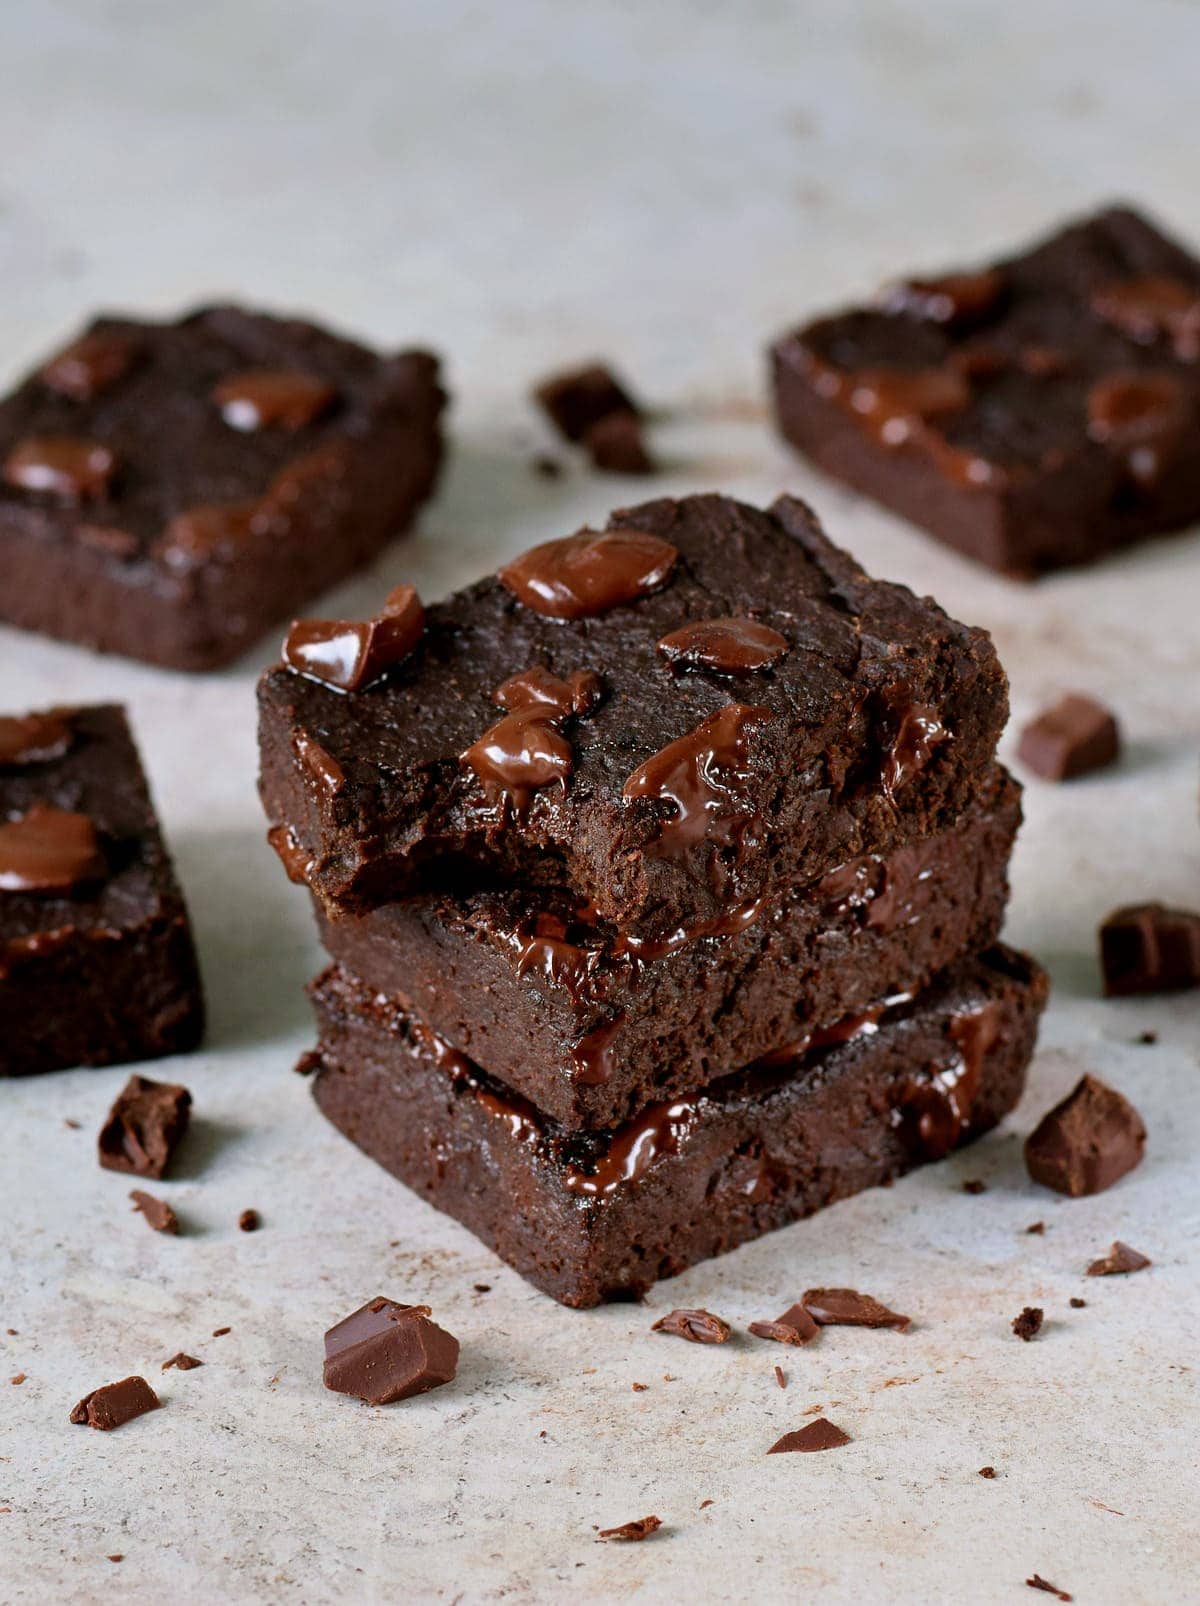 Stapel von 3 Brownie-Stücken mit veganer Schokolade